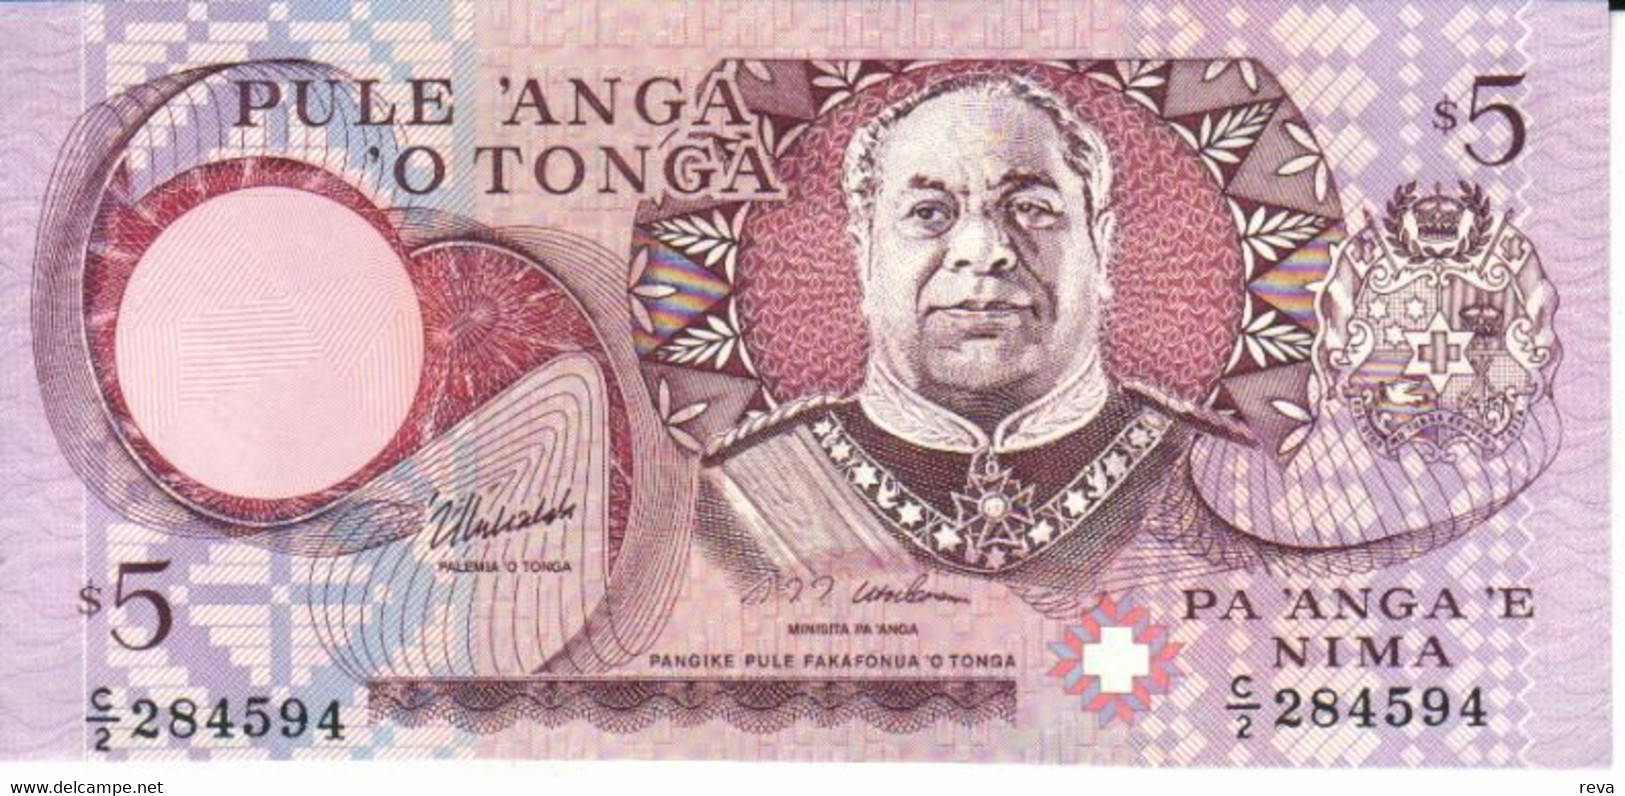 TONGA 5 PA'ANGA  PURPLE KING PORTRAIT FRONT BUILDINGS BACK  ND(1995) P33 VF READ DESCRIPTION - Tonga